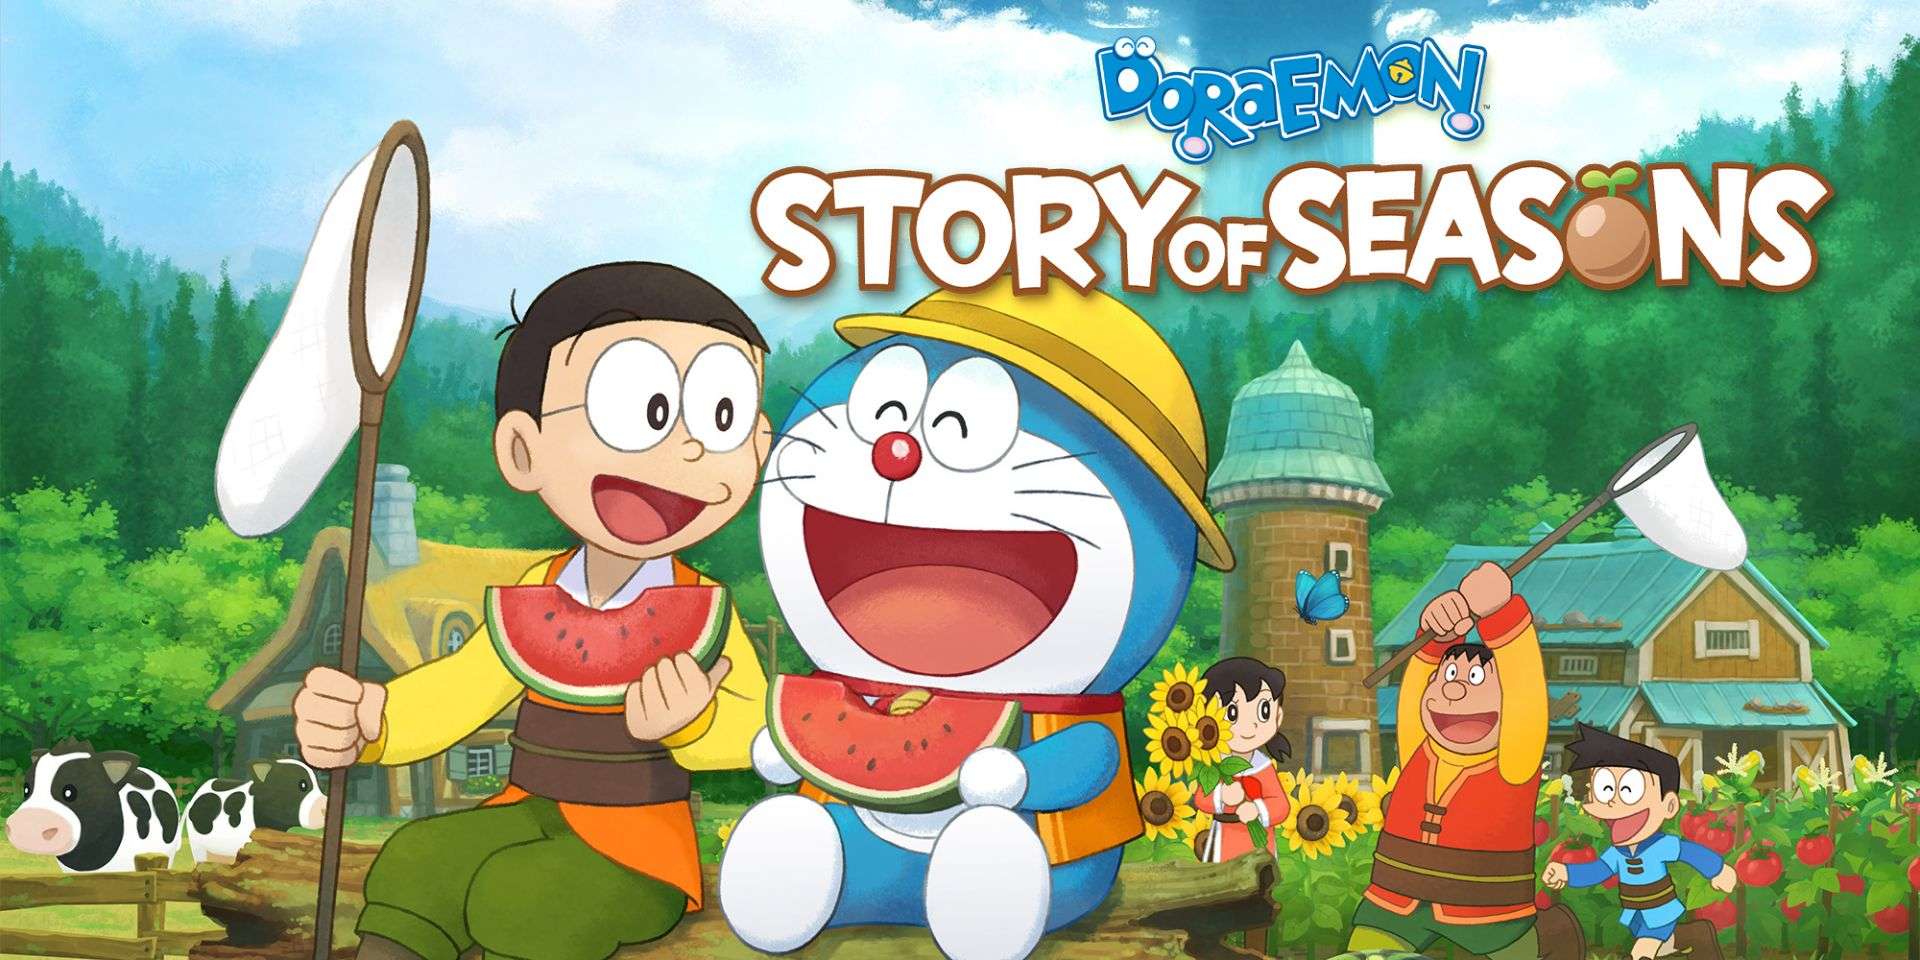 Doraemon Story of Seasons confirma su fecha de lanzamiento en Europa